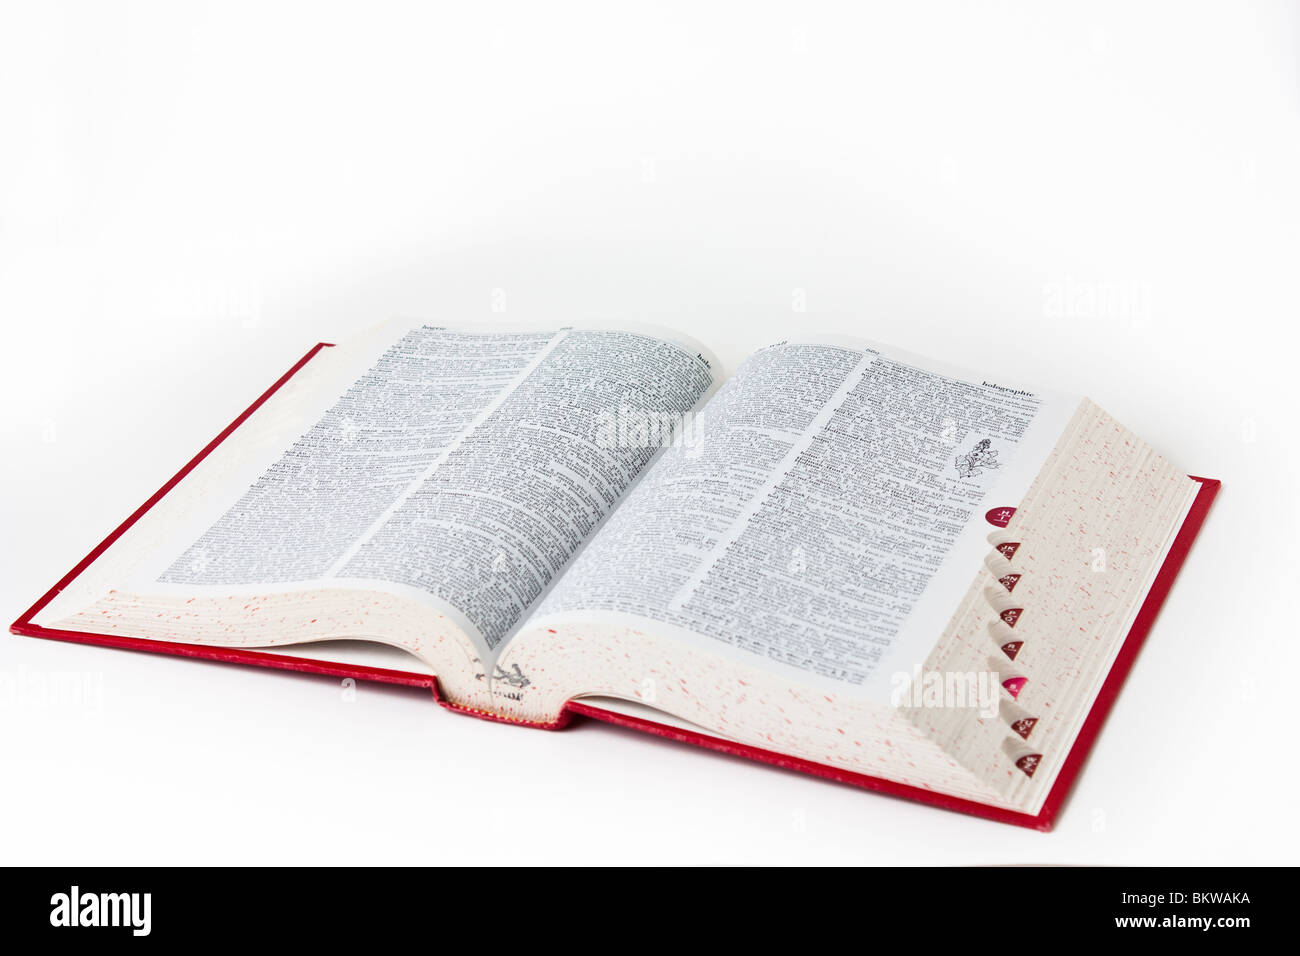 Wörterbuch-Definition Buch Bücher Referenz Ausschnitt Stockfoto